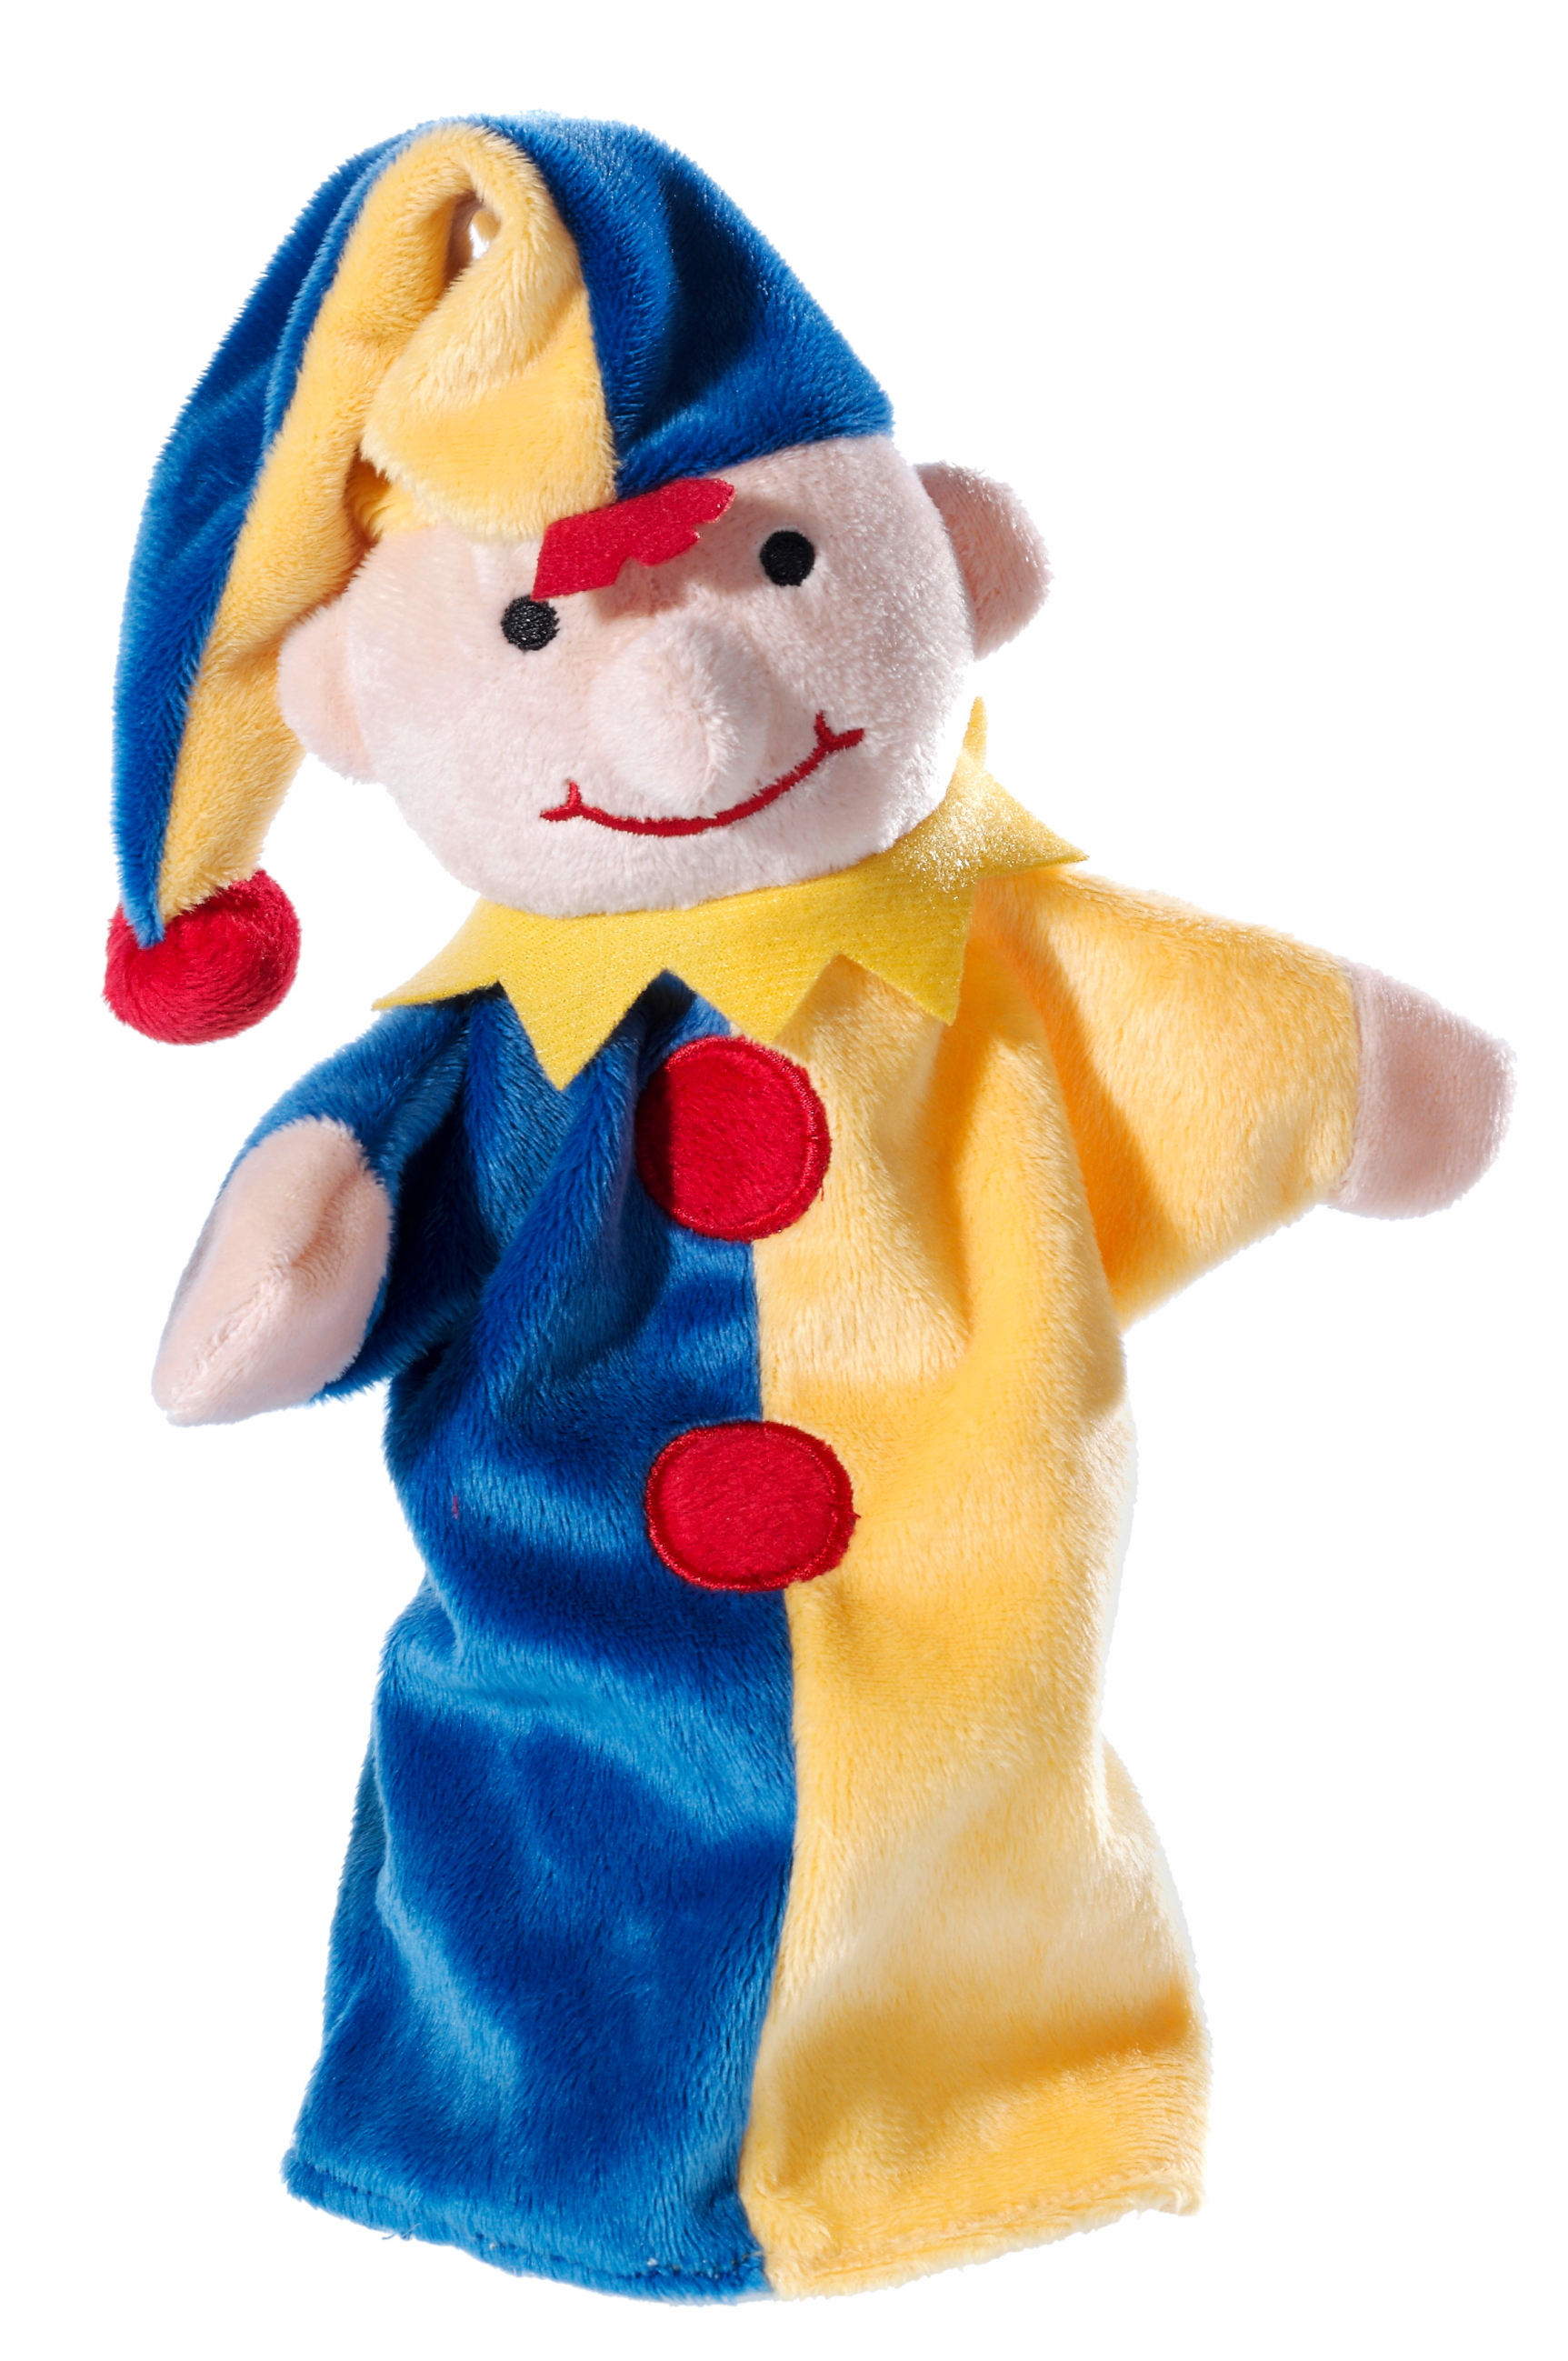 Heunec Handspielpuppe Kasperl im blau-gelben Gewandt und Zipfelmütze mit roten Knöpfen und Bommel